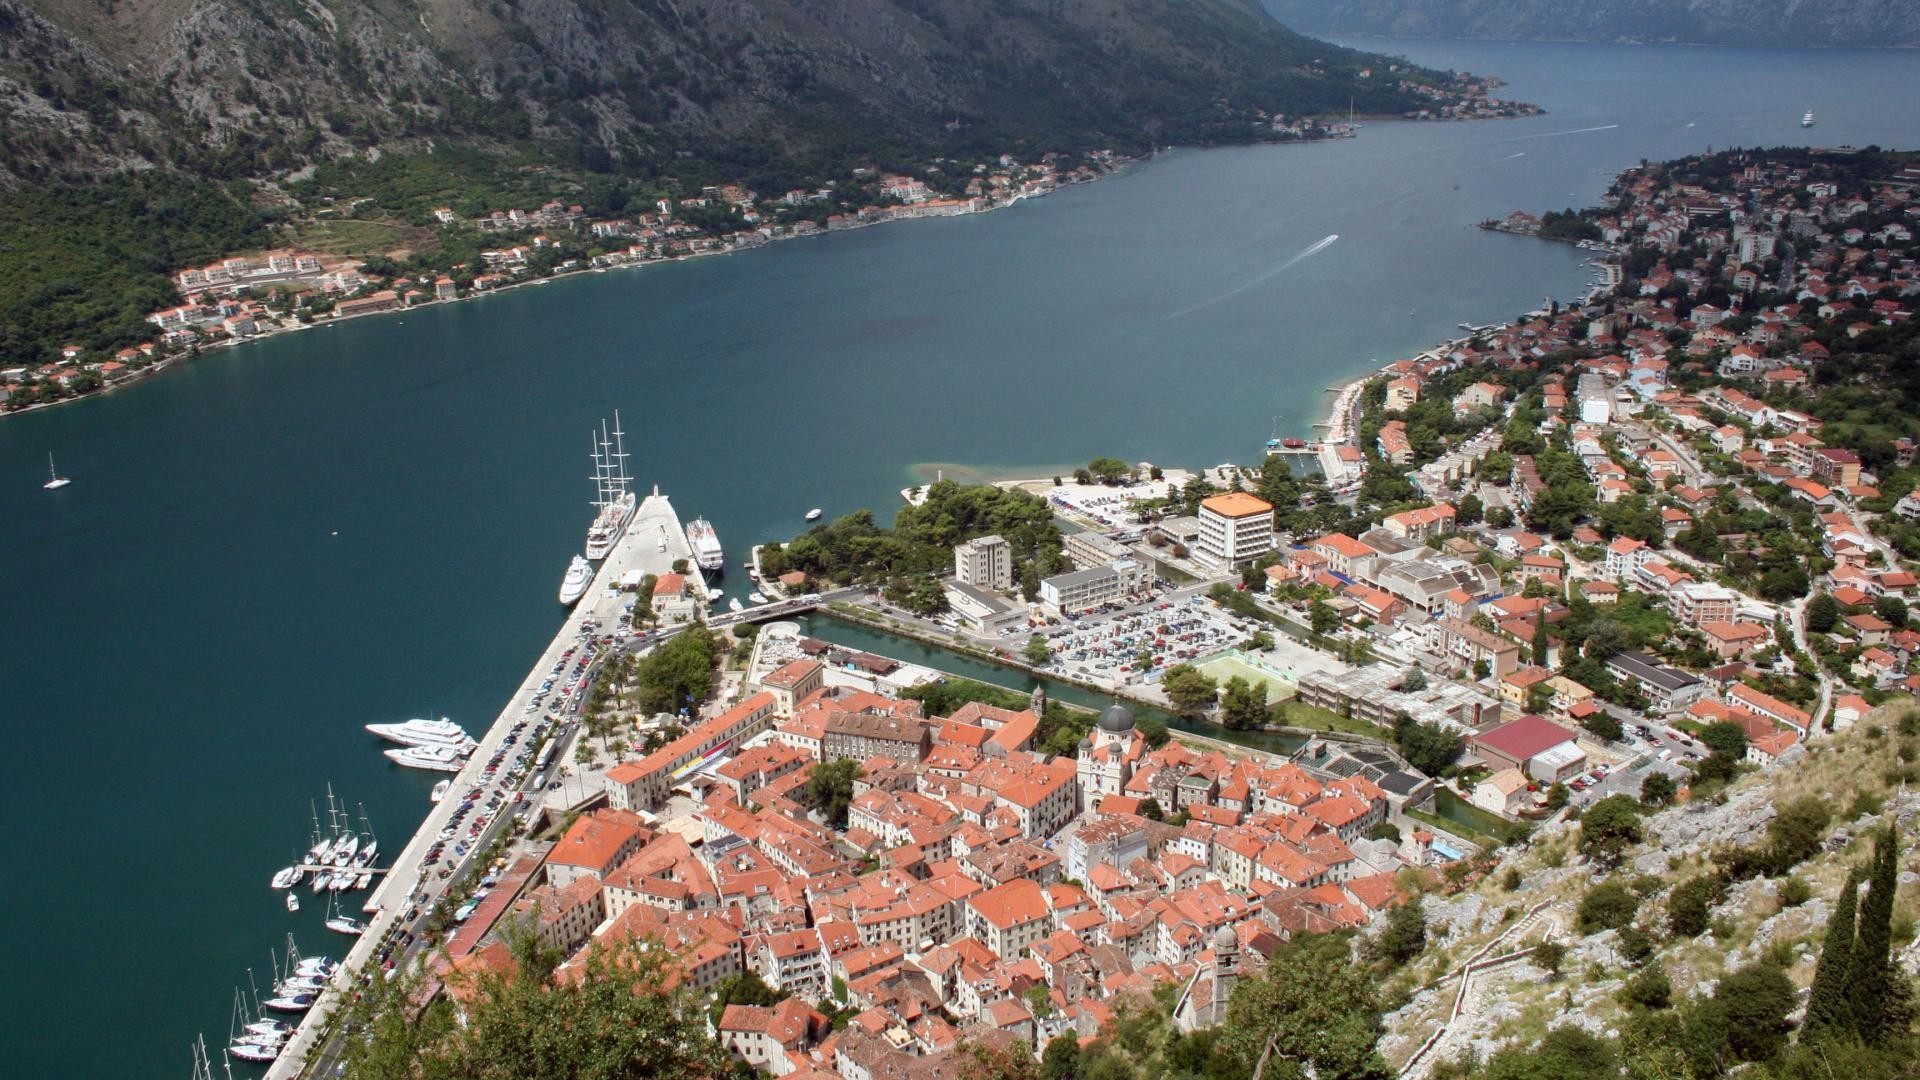 Kotor (Cattaro) Montenegro, foto di Rocco Stasi per Wikipedia